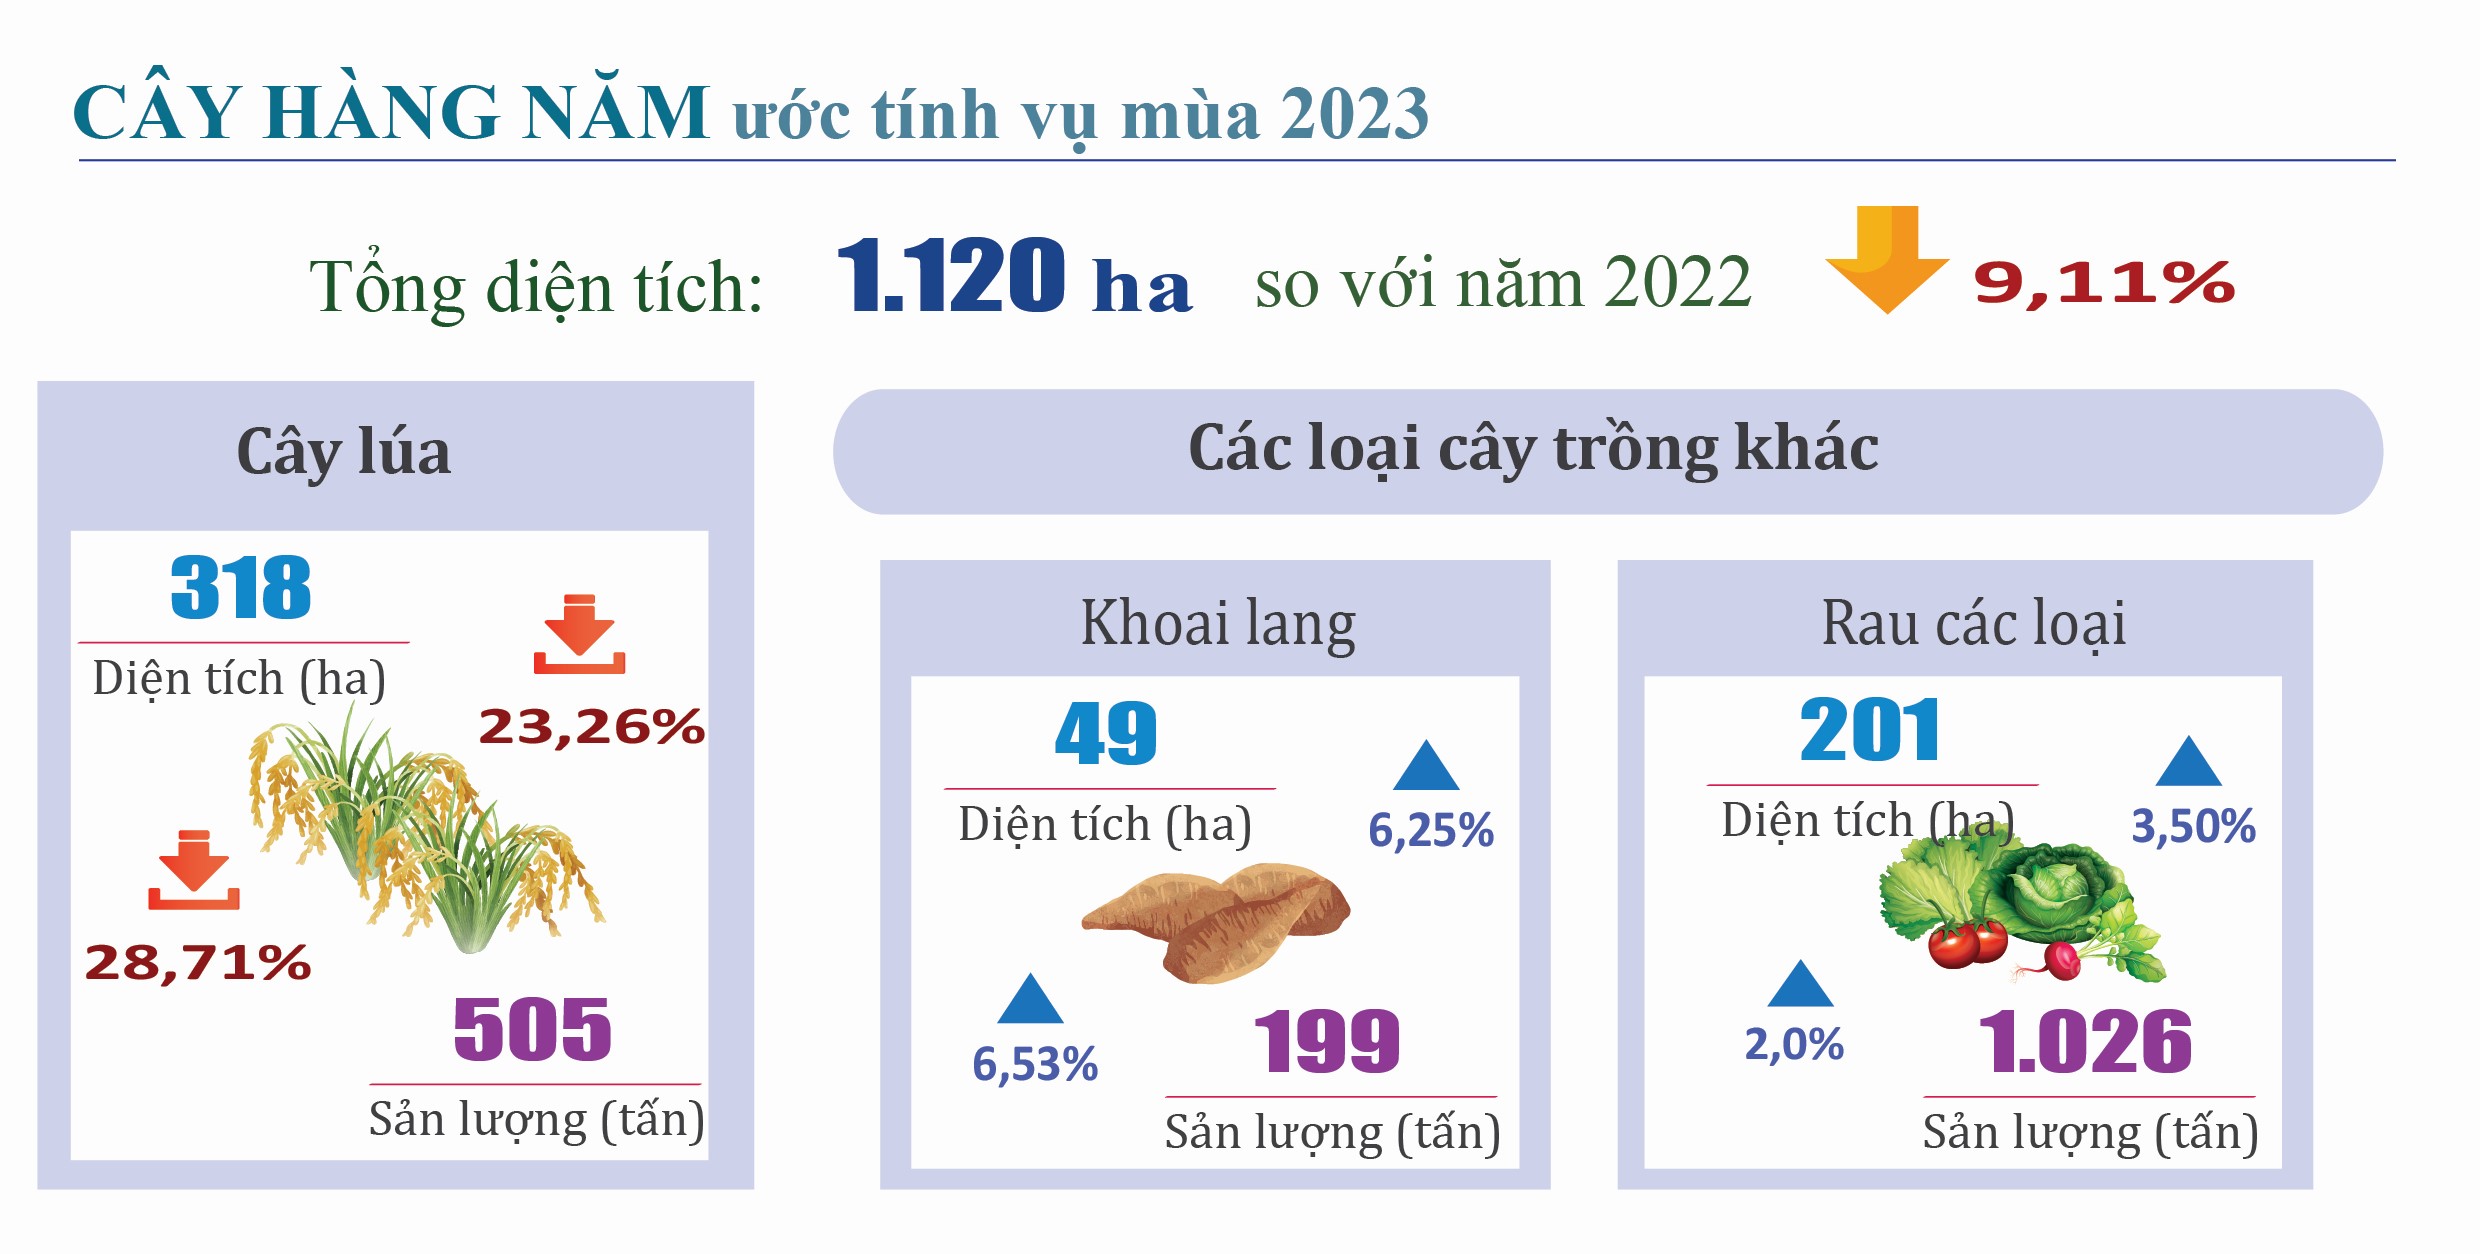 Tình hình kinh tế - xã hội tỉnh Hà Tĩnh tháng 10 và 10 tháng năm 2023